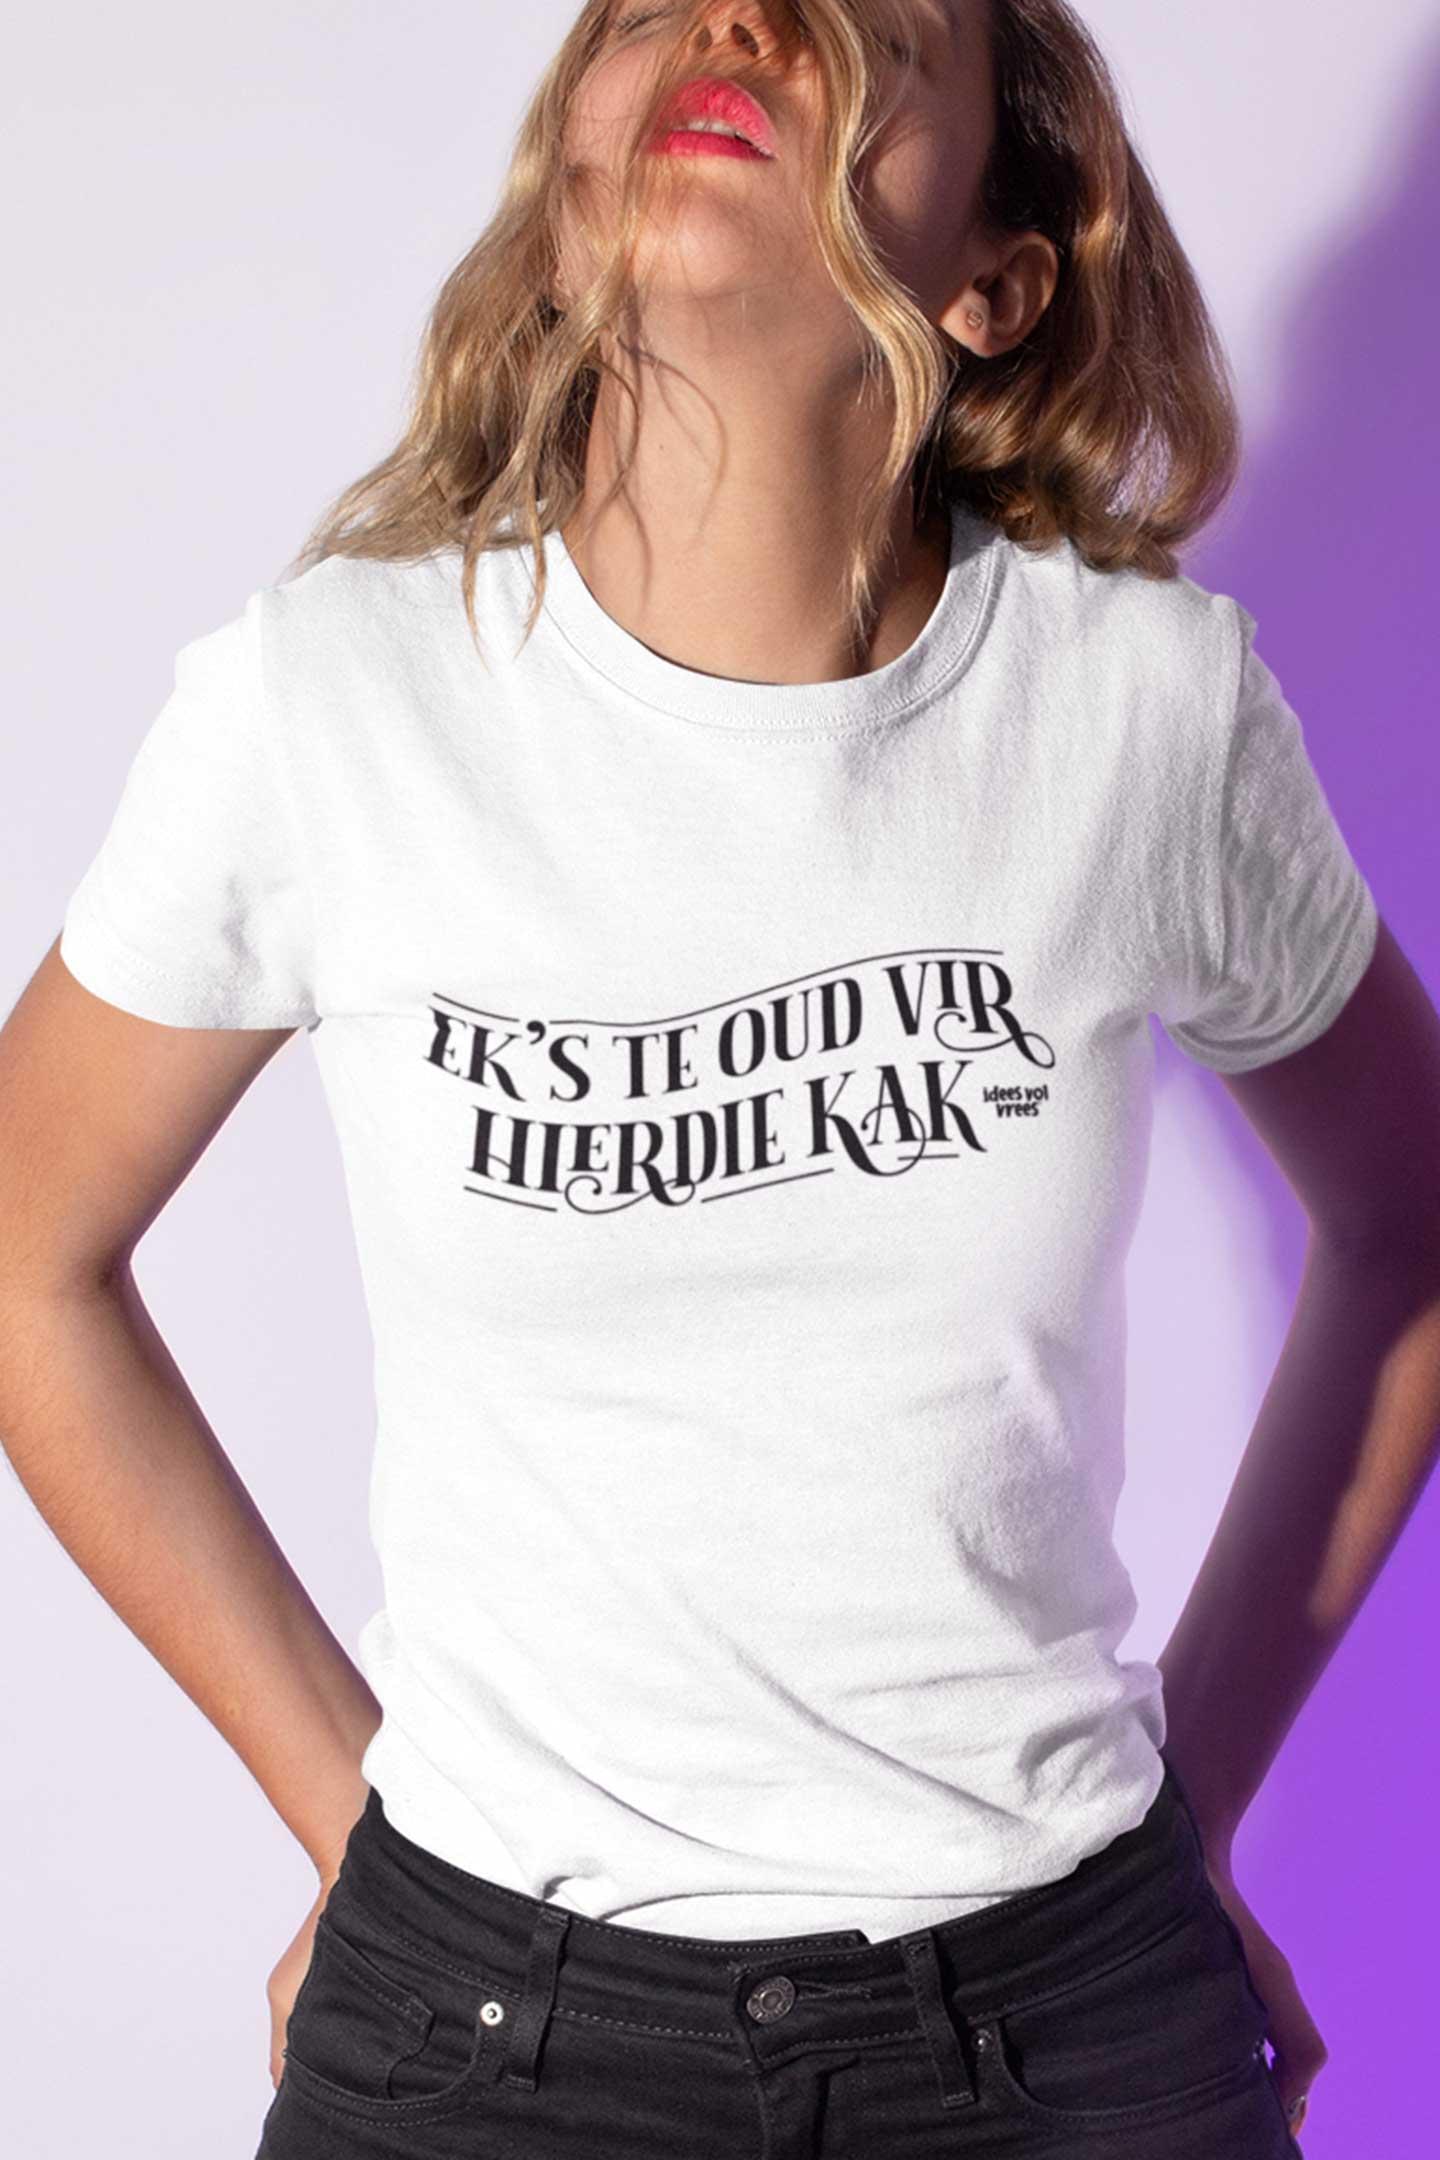 Idees Vol Vrees® "Ek's te oud vir hierdie kak" Women's T-shirt